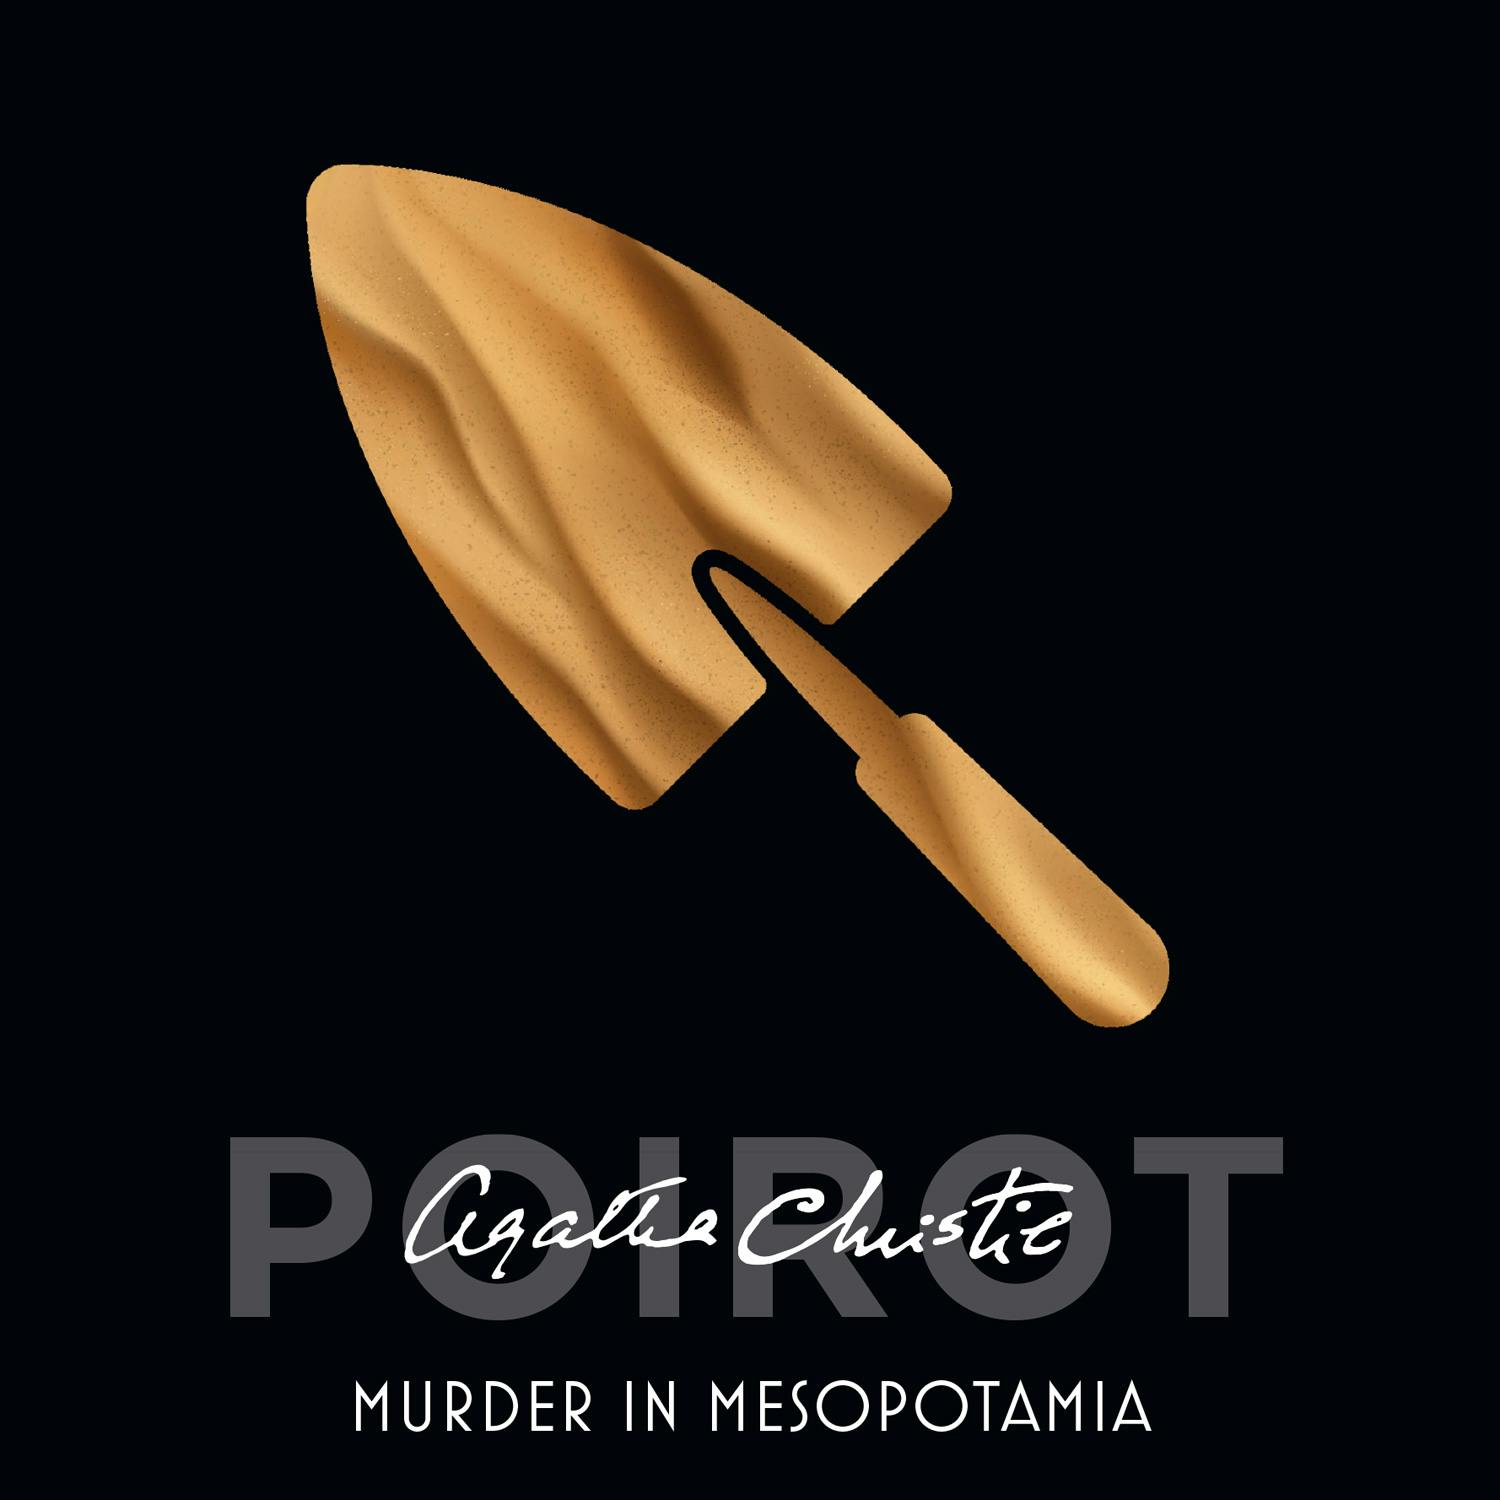 Murder in Mesopotamia - undefined